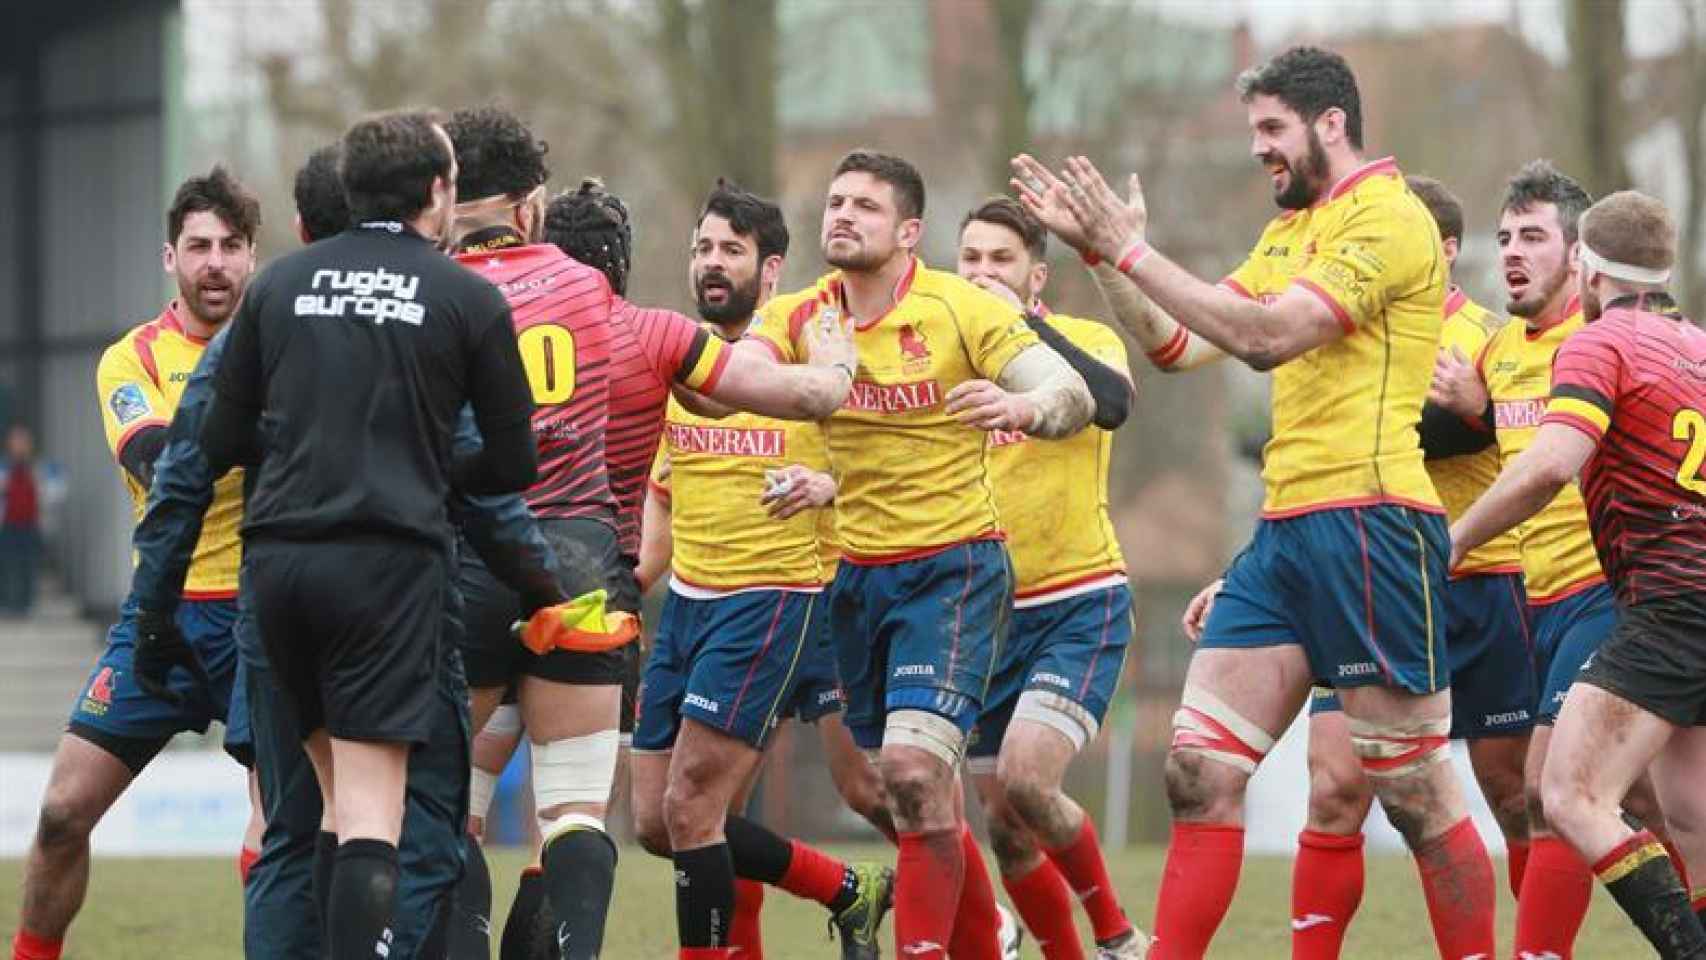 Los jugadores españoles de rugby piden explicaciones al árbitro.